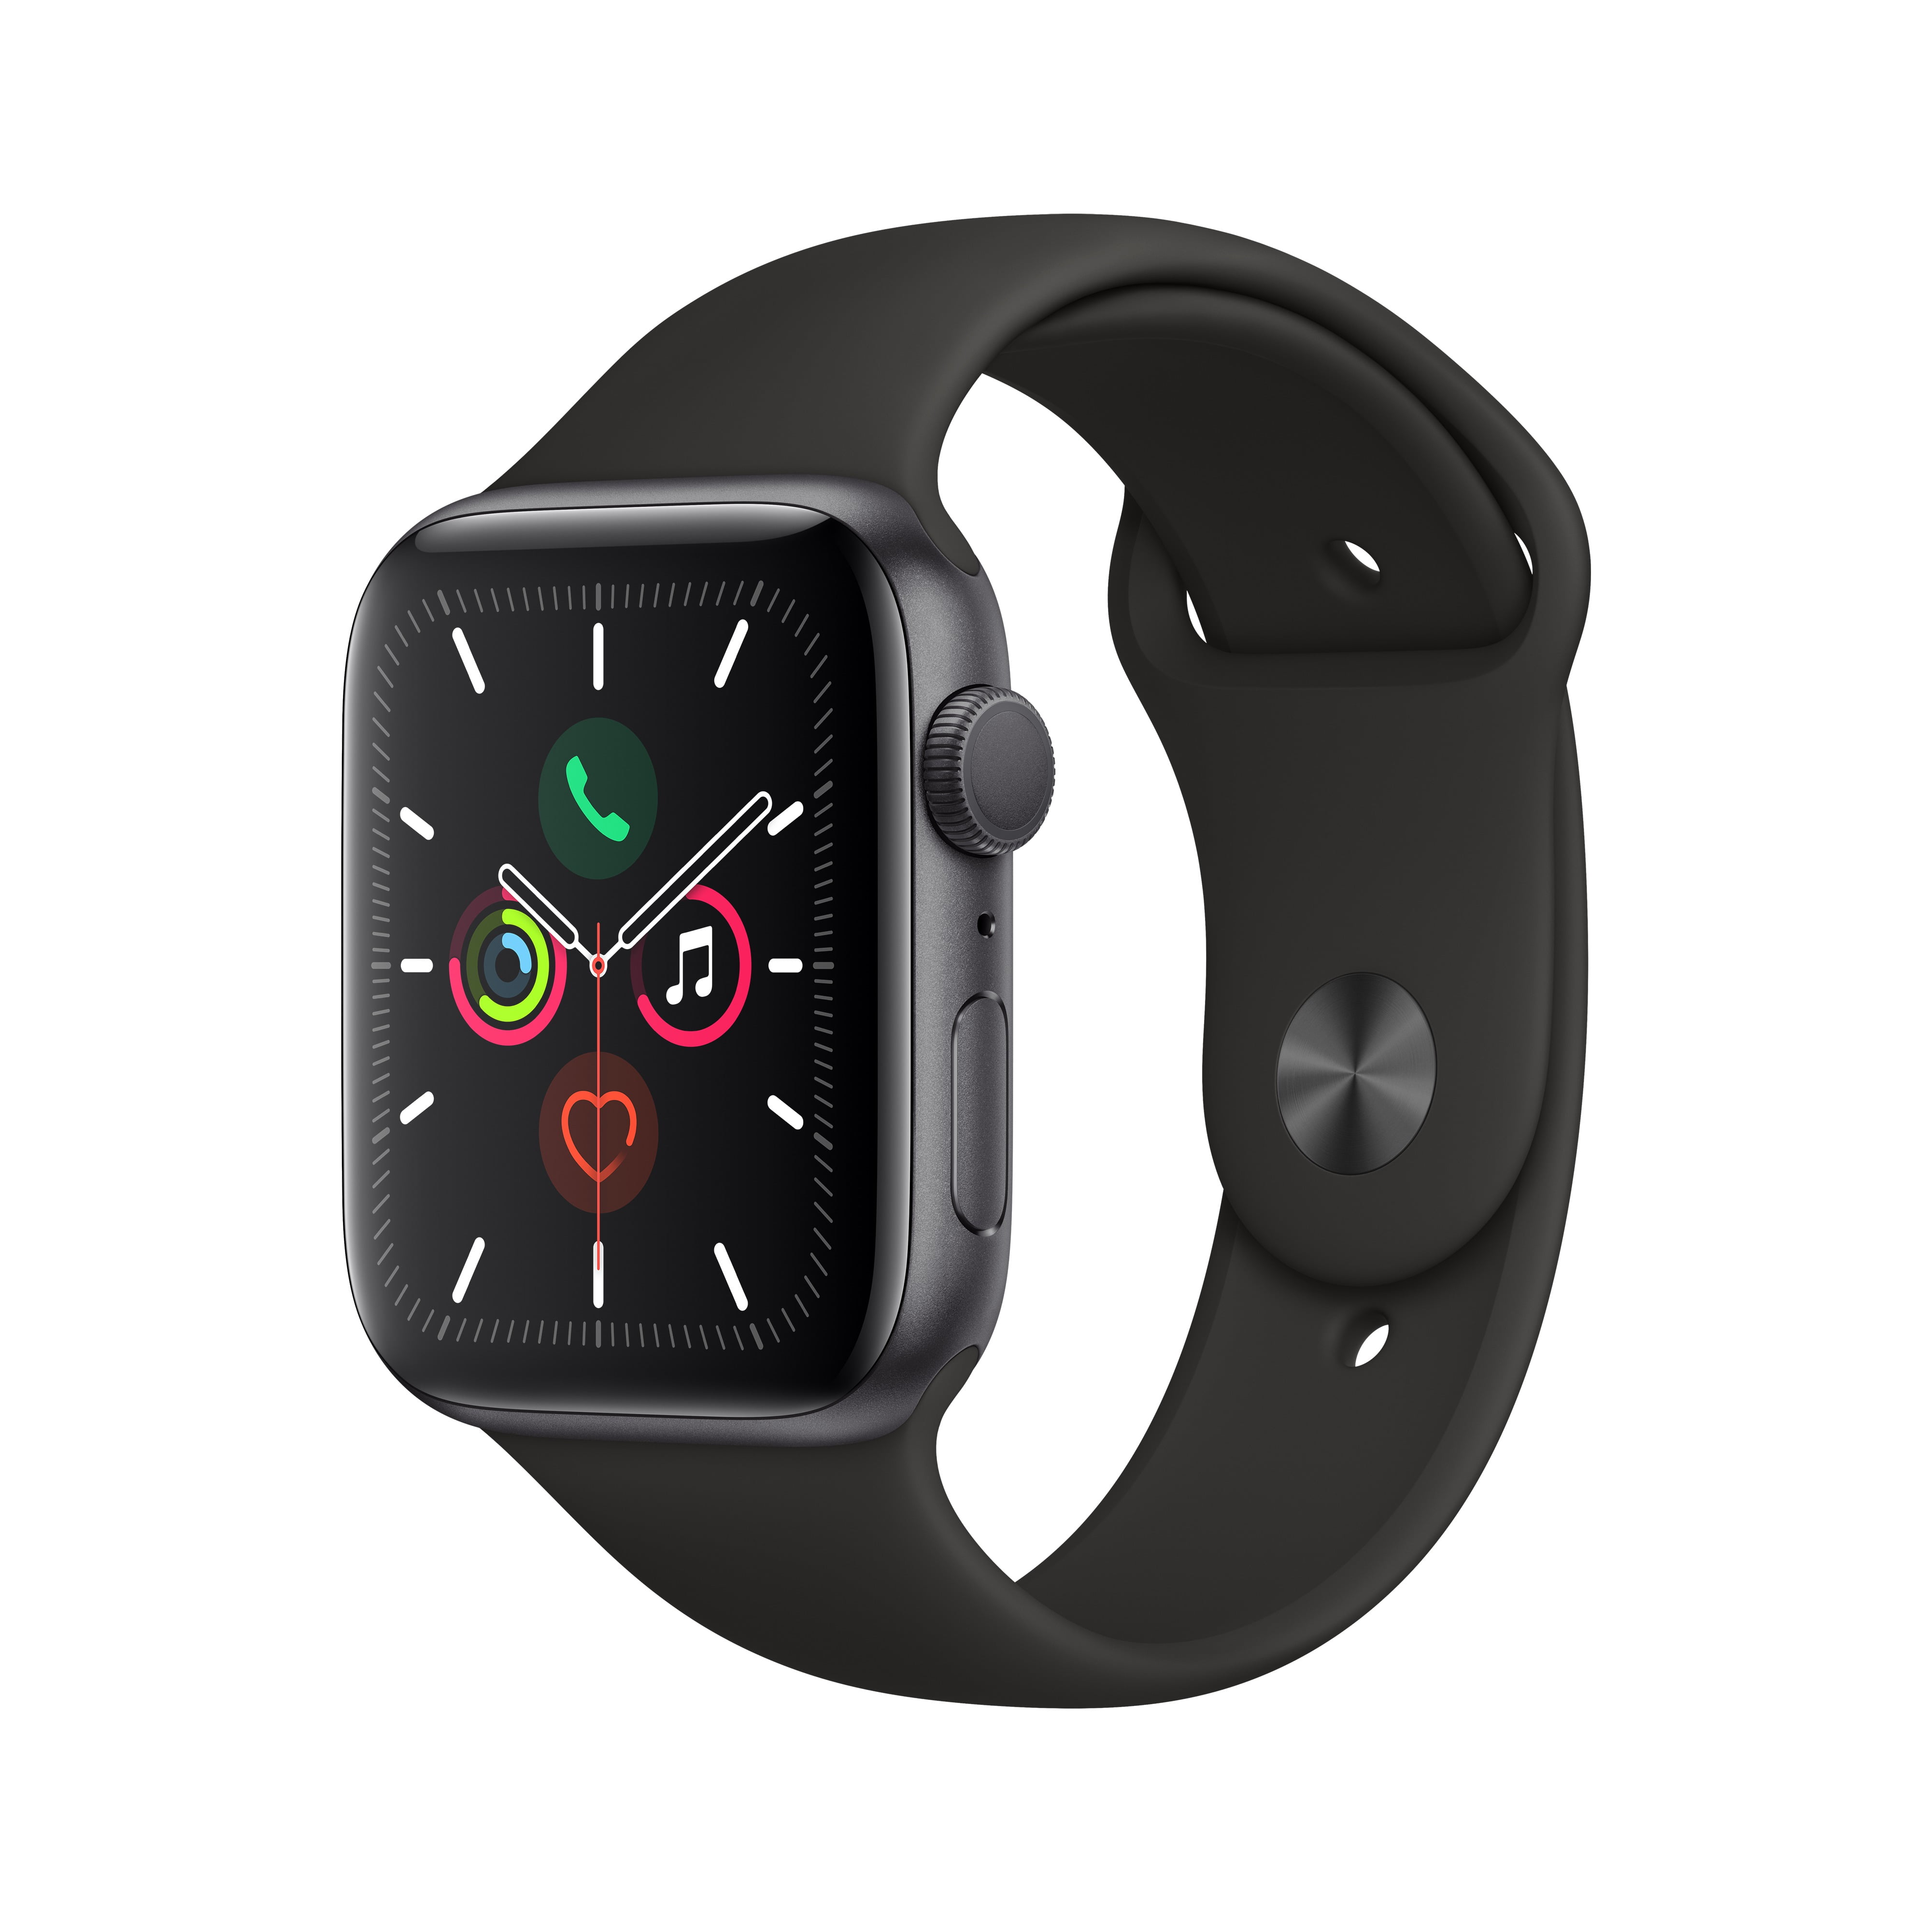 Apple Watch Series 5 Case Walmart Hotsell, 57% OFF | www 